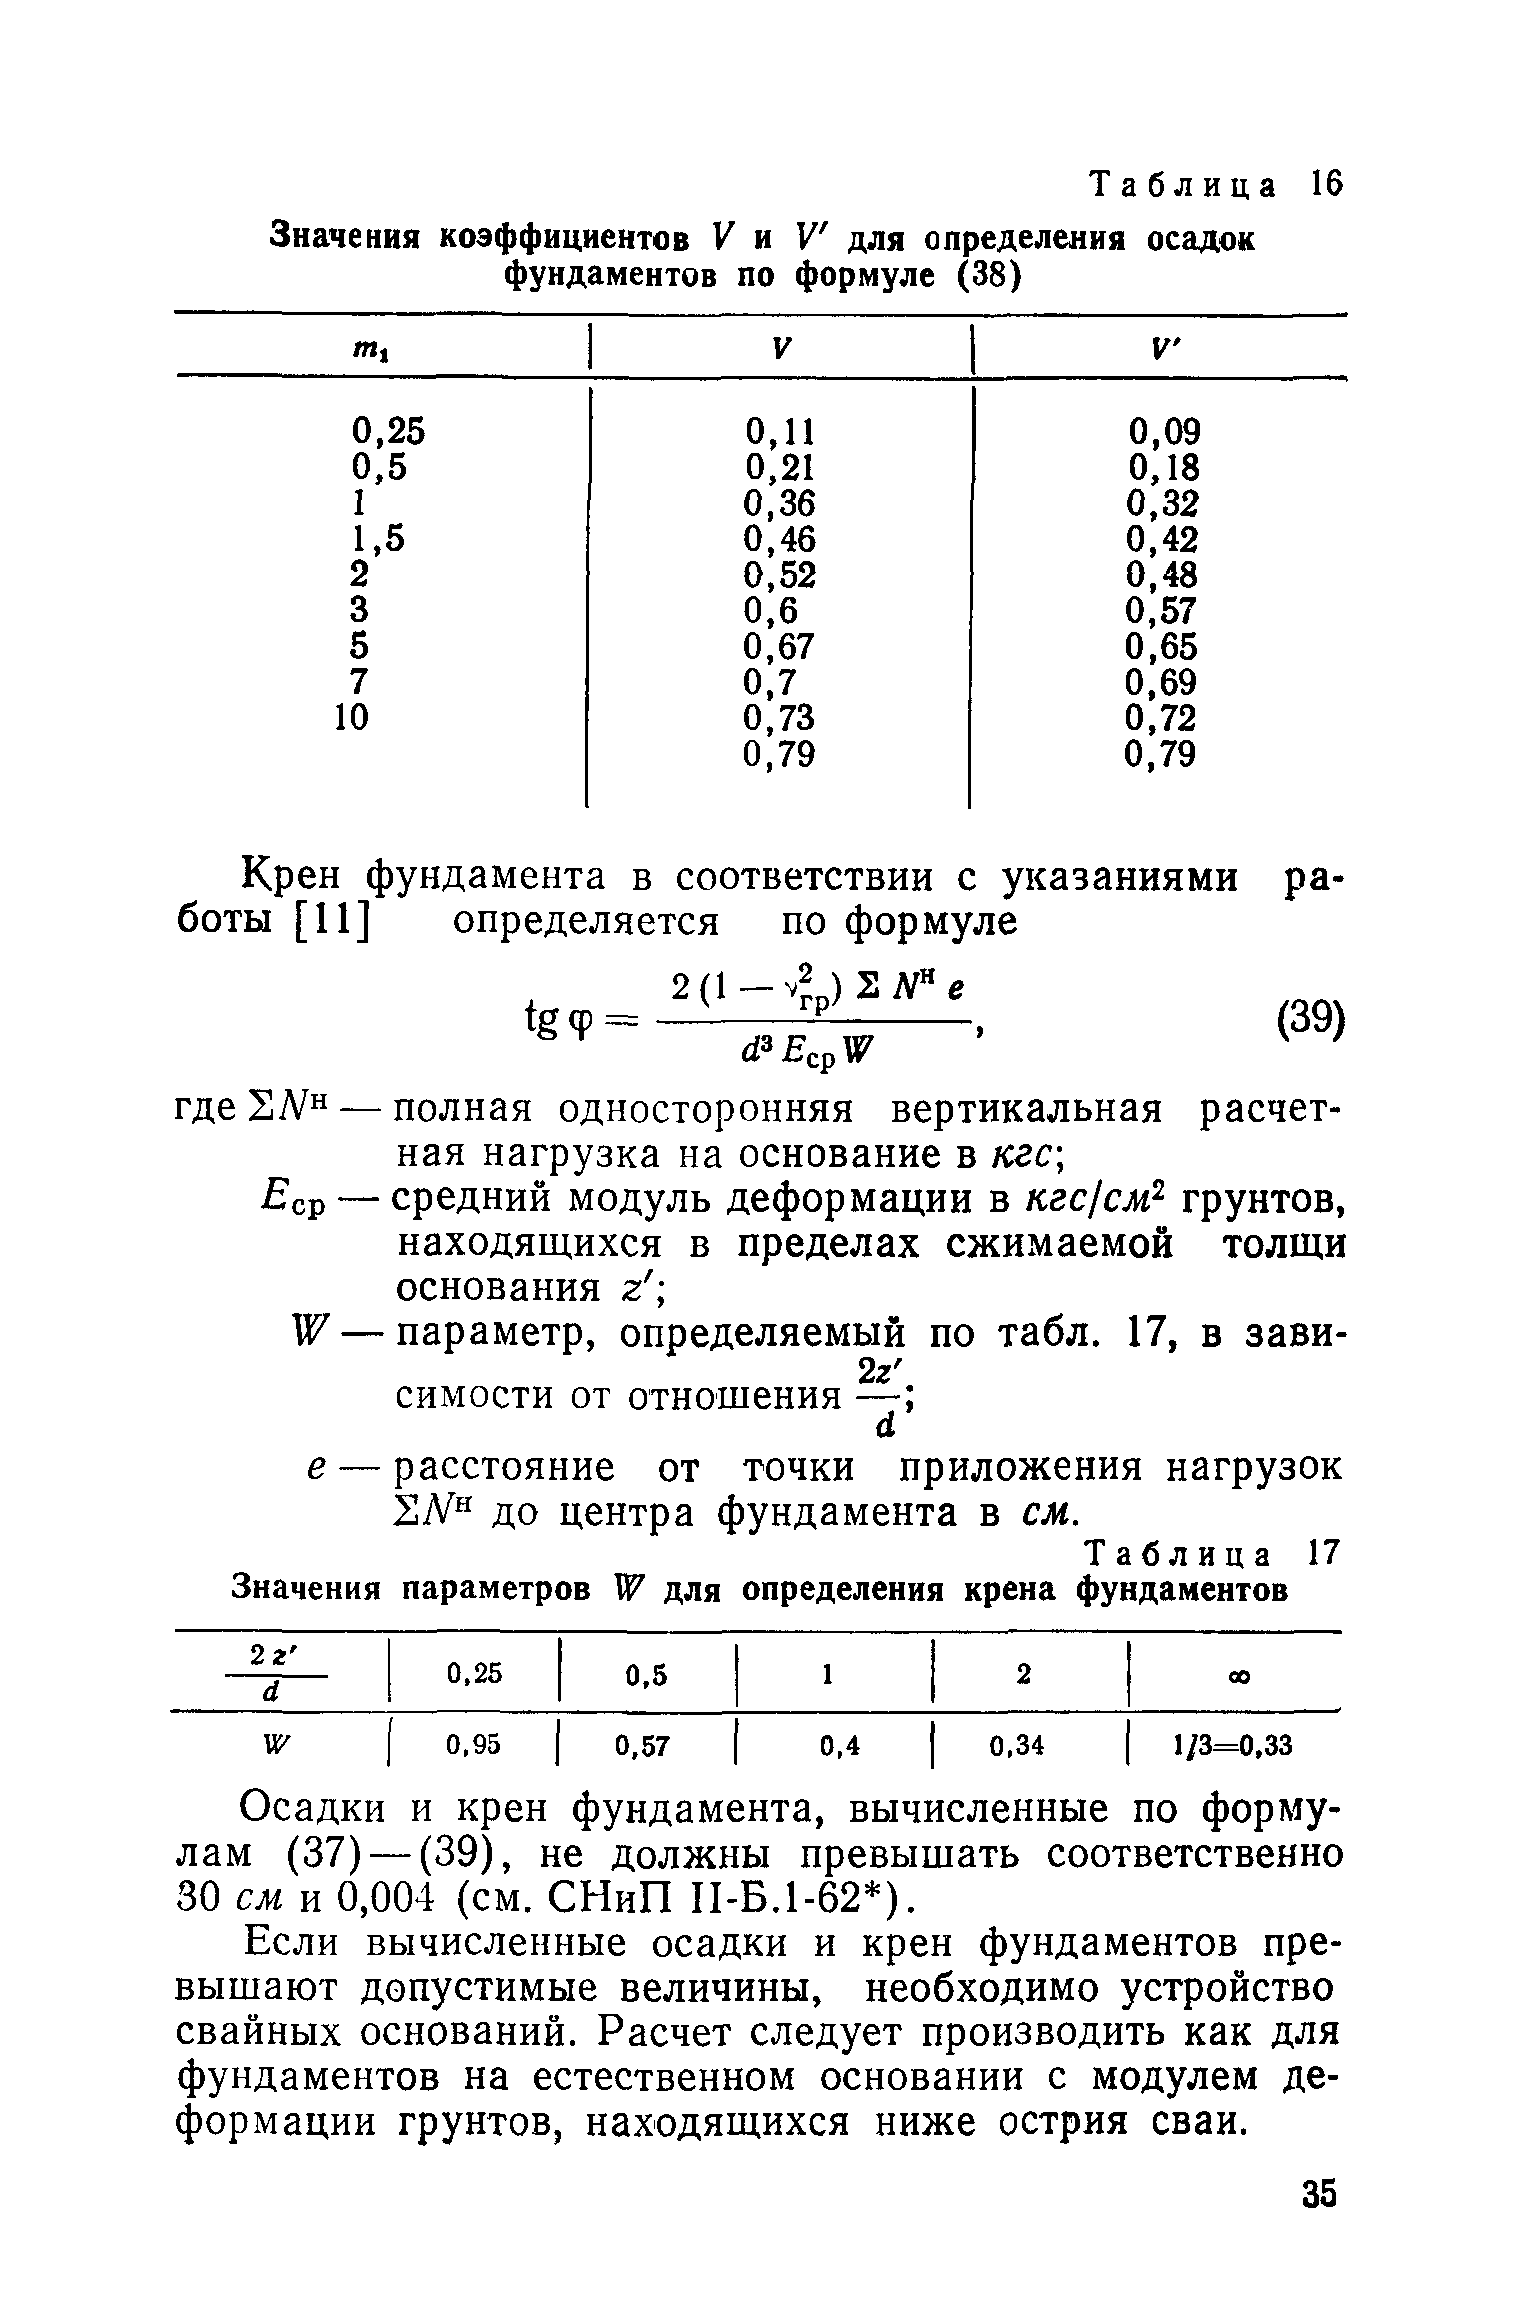 ВСН 001-71